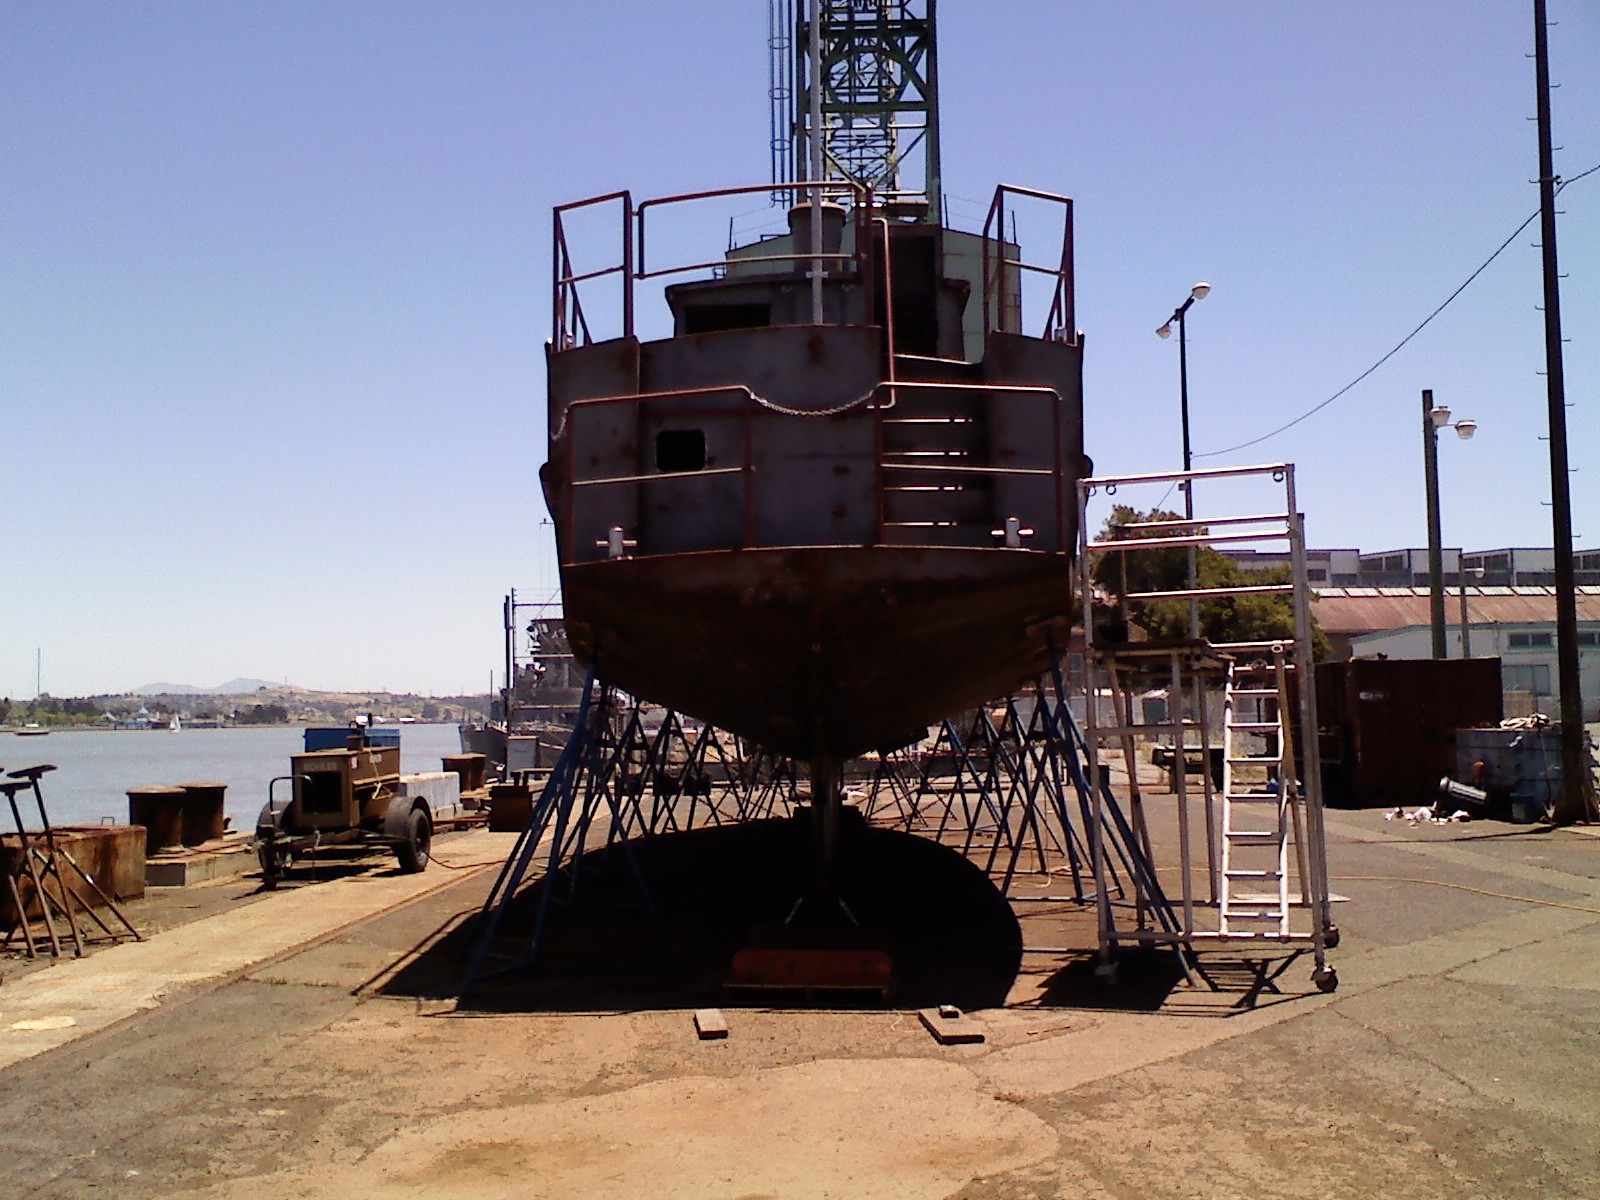 building koloa kama hele: boat stands